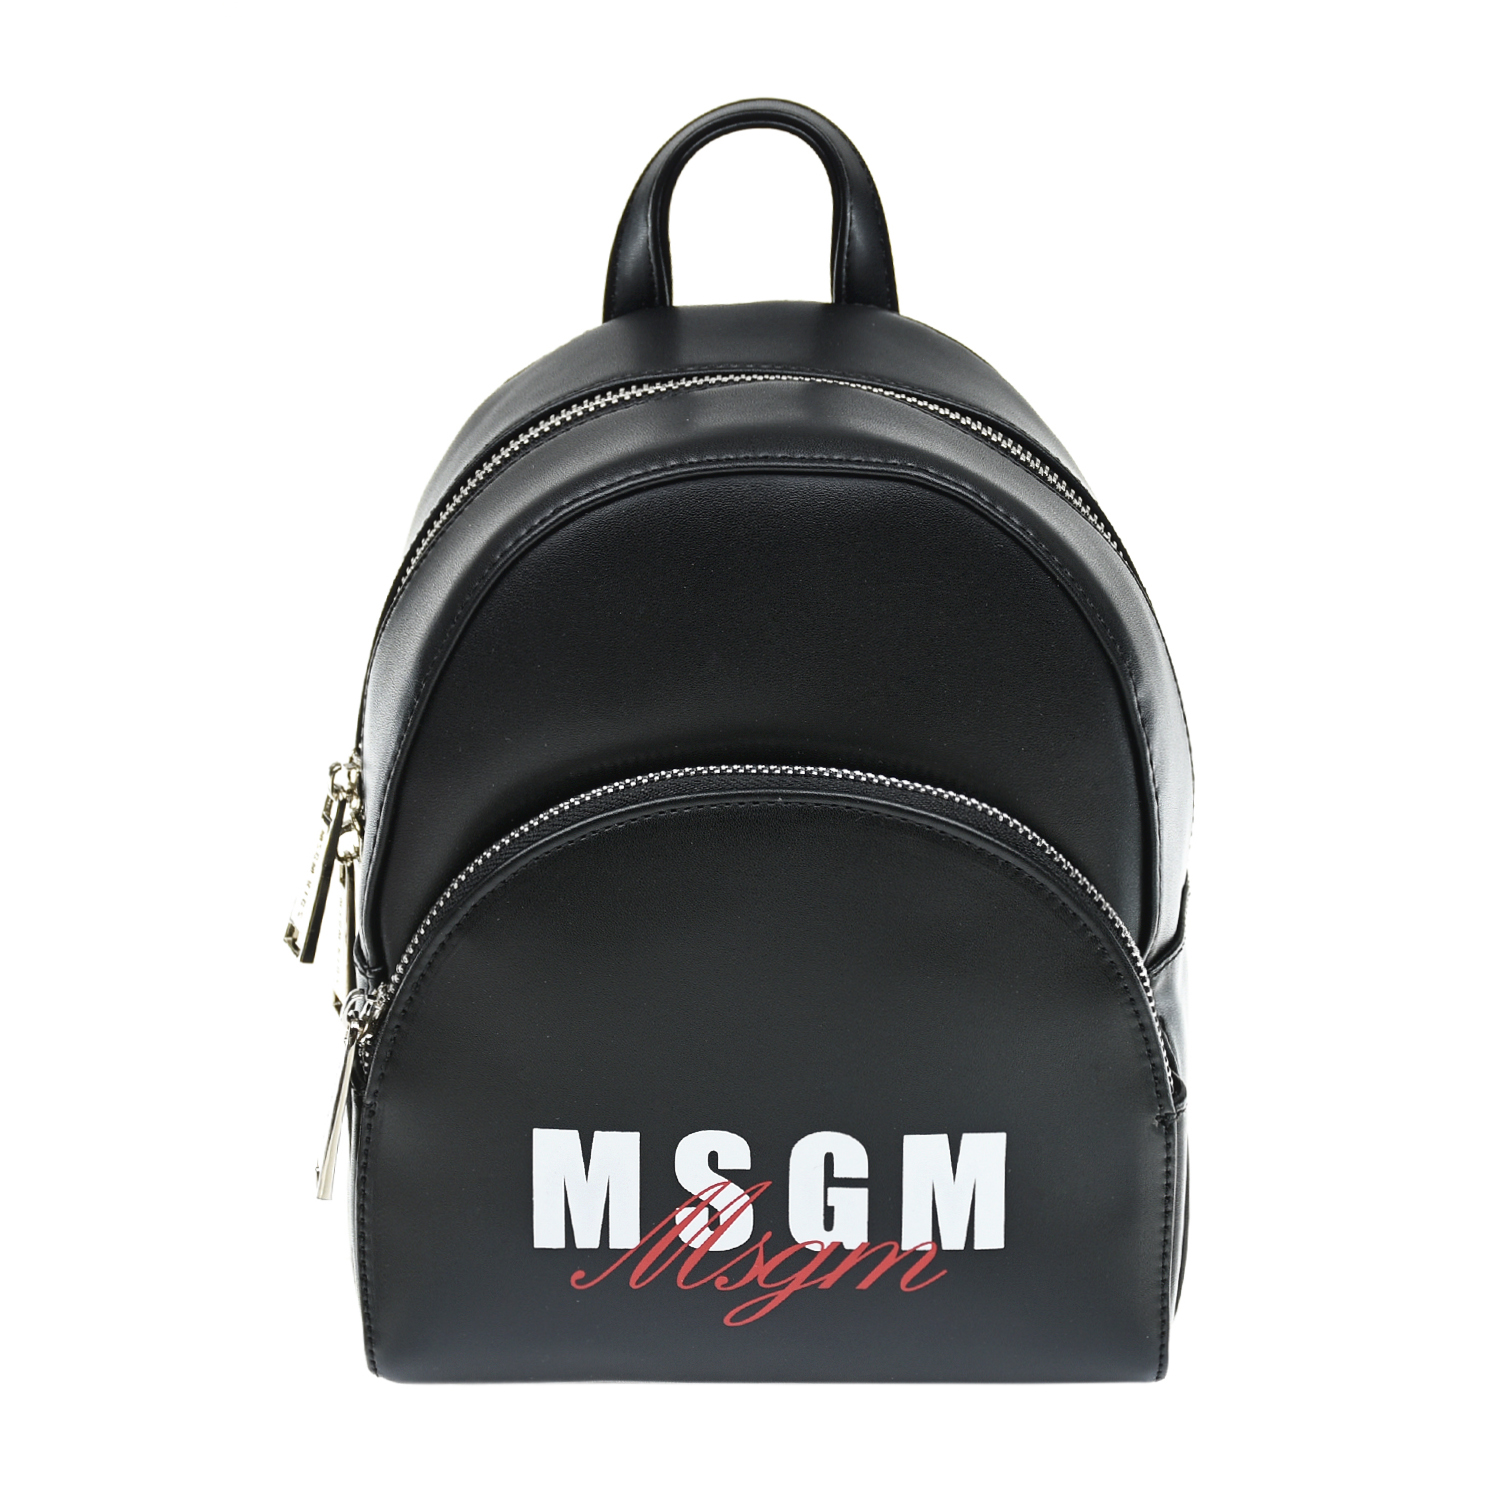 Черный рюкзак с белым логотипом, 21x17x10 см MSGM детский, размер unica - фото 1